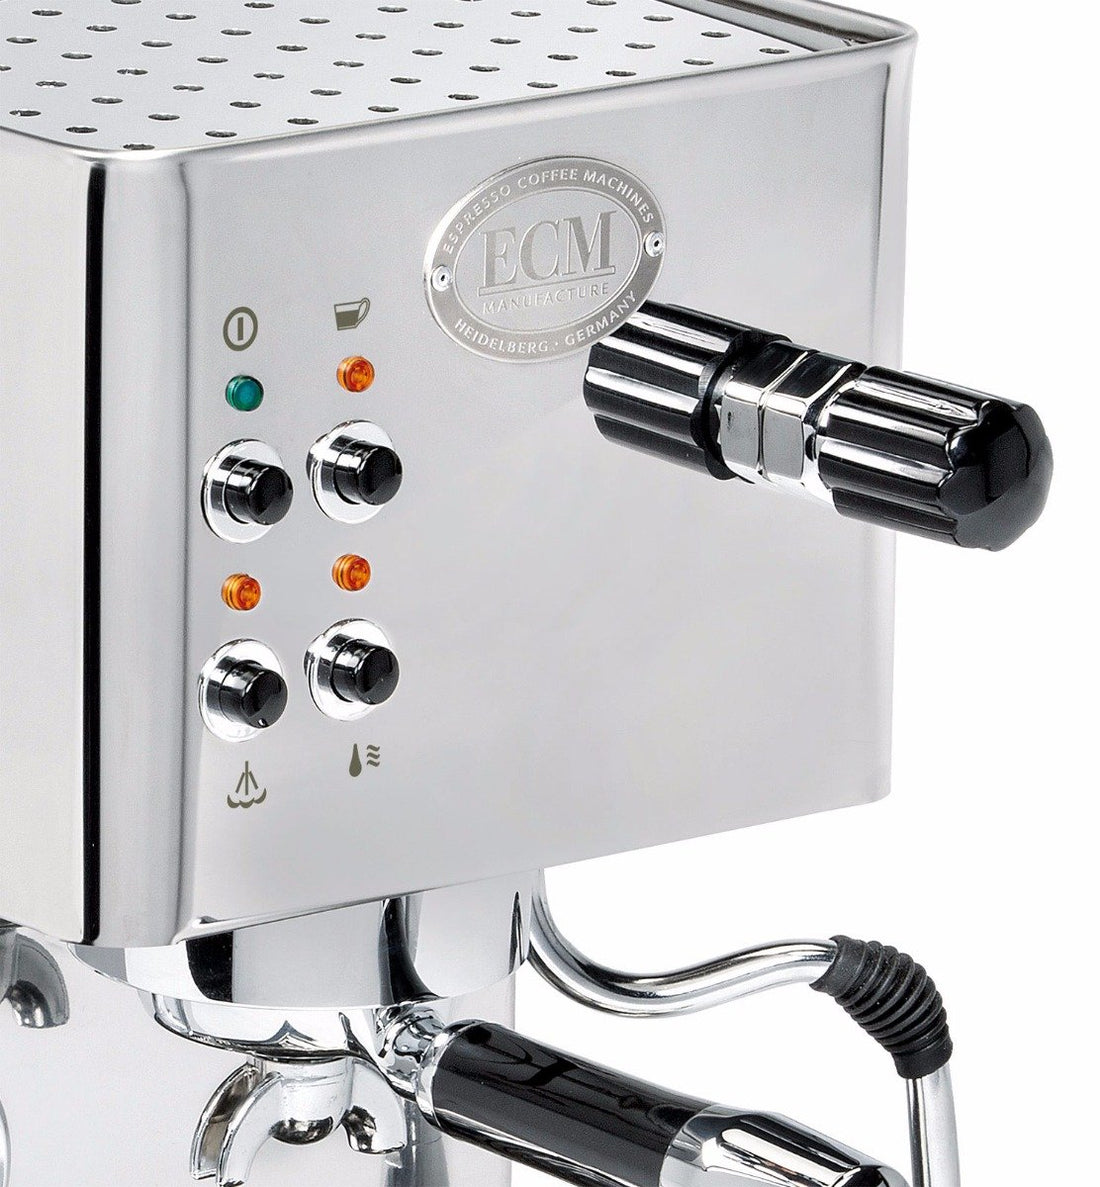 Refurbished ECM Casa V Espresso Machine